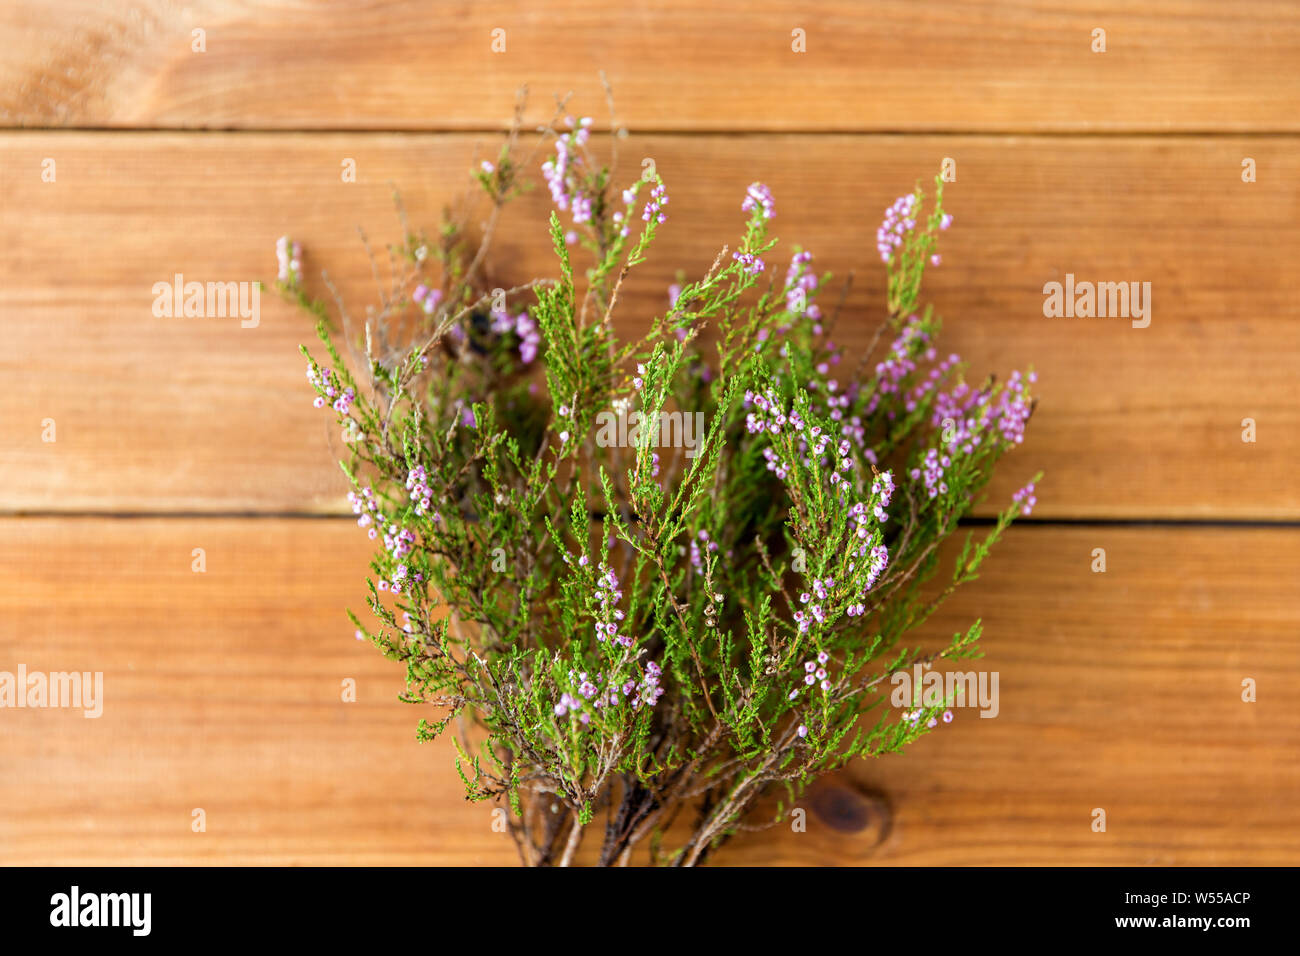 heather bush on wooden table Stock Photo